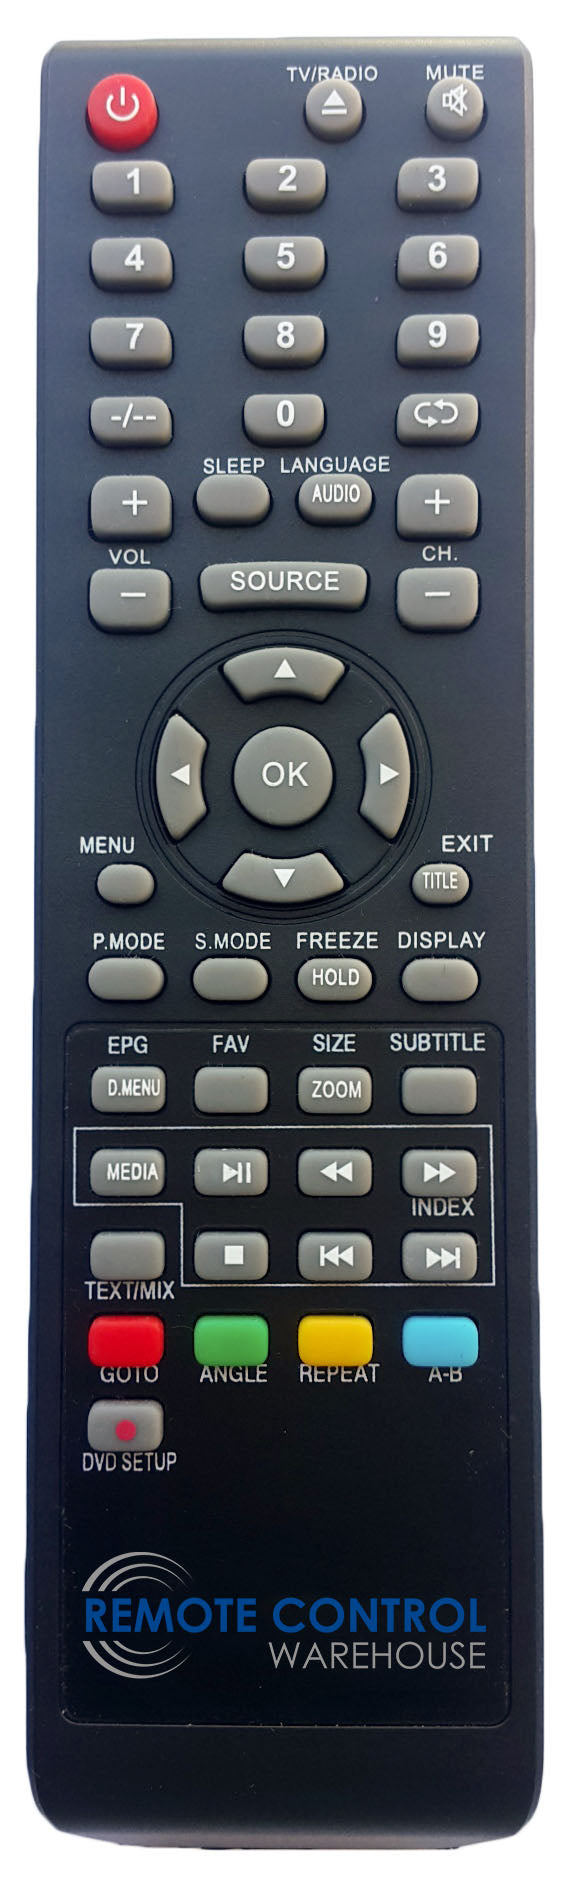 AKAI REPLACEMENT REMOTE CONTROL - AK652016UHD AK-652016UHD  LED TV - Remote Control Warehouse